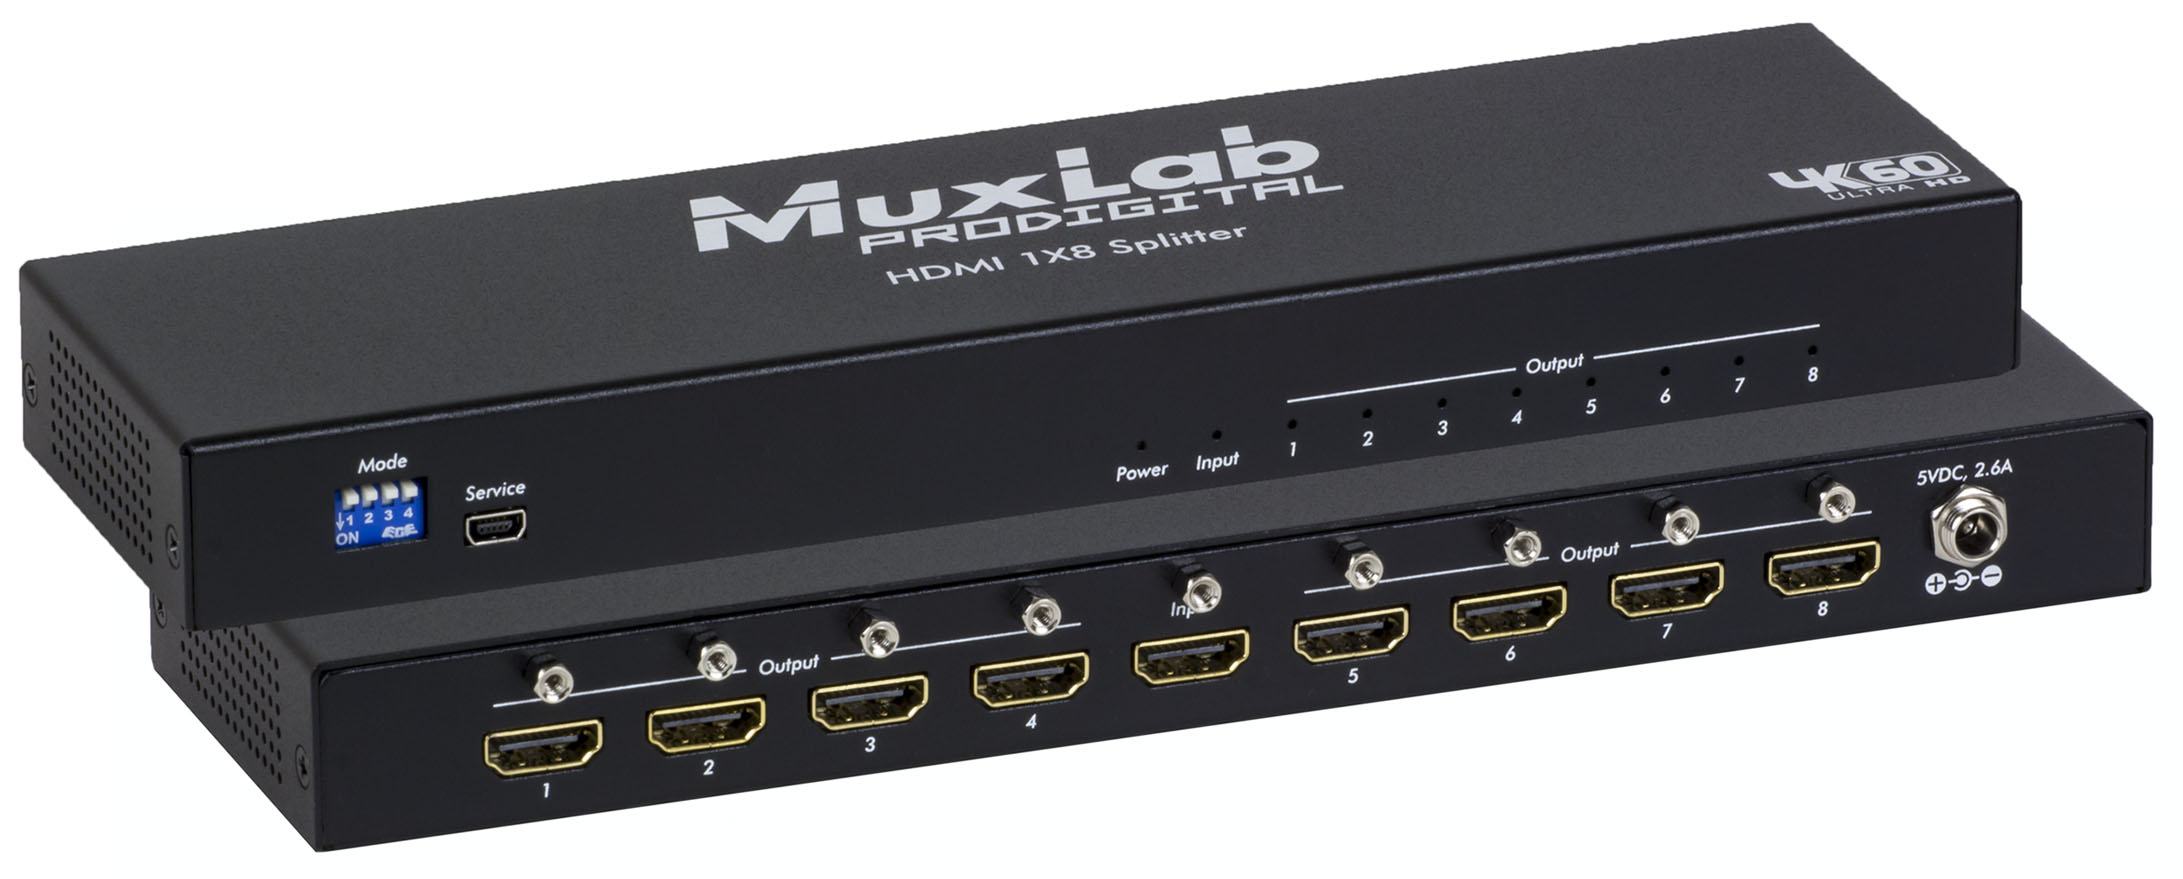 HDMI 1x8 Splitter, 4K60 - Muxlab